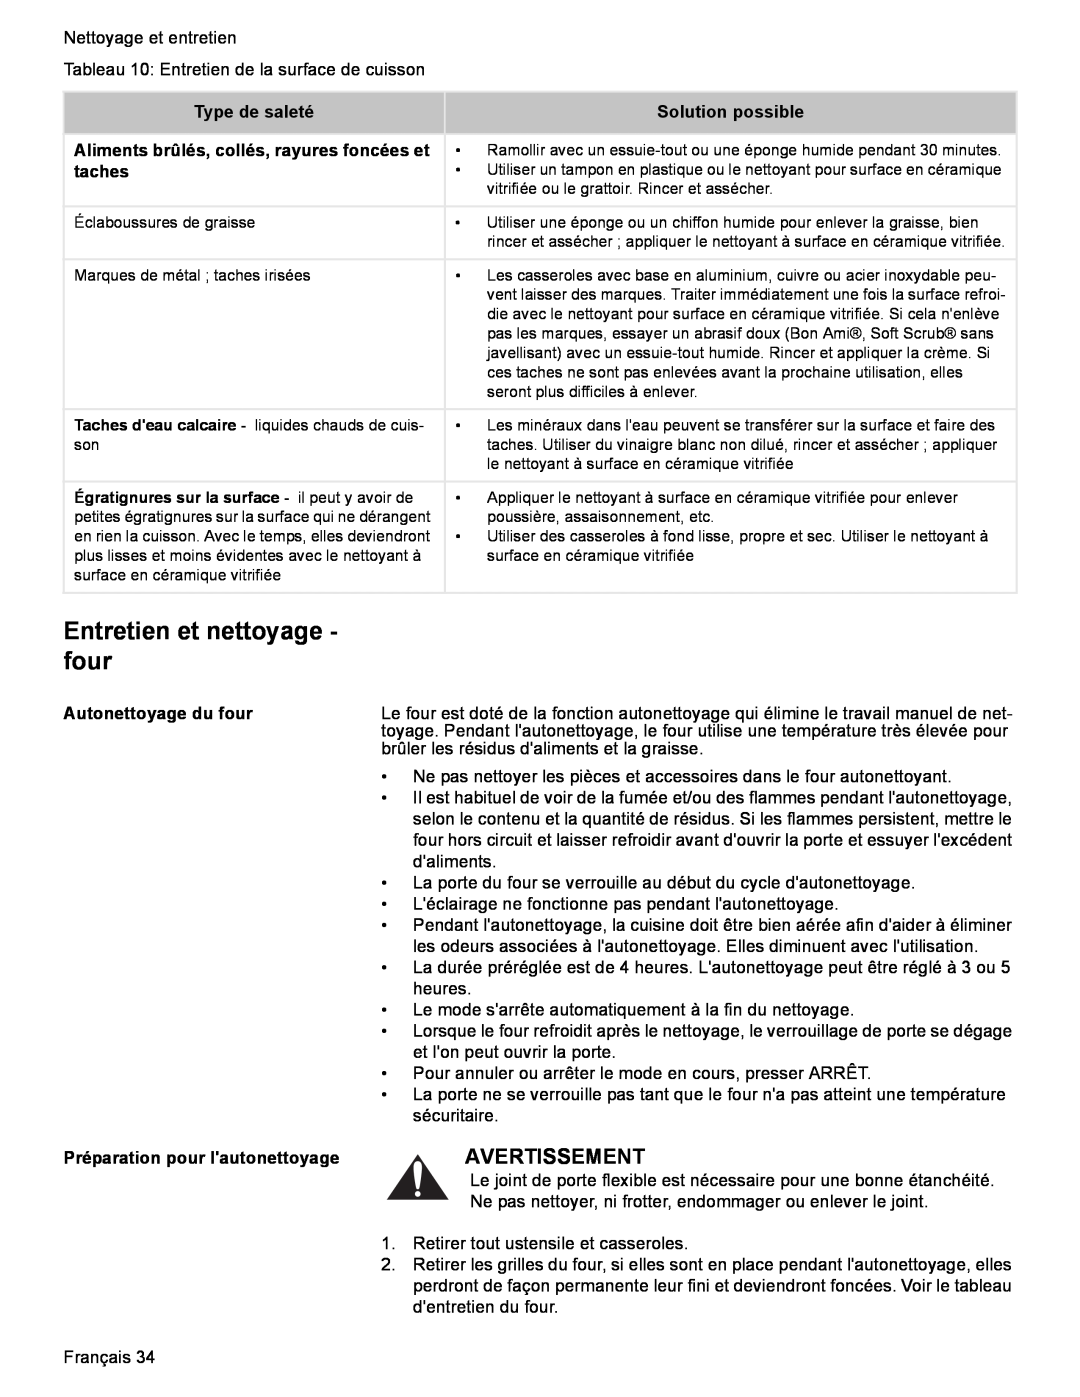 Bosch Appliances HES7282U manual Entretien et nettoyage - four, Avertissement, Type de saleté, Solution possible, taches 